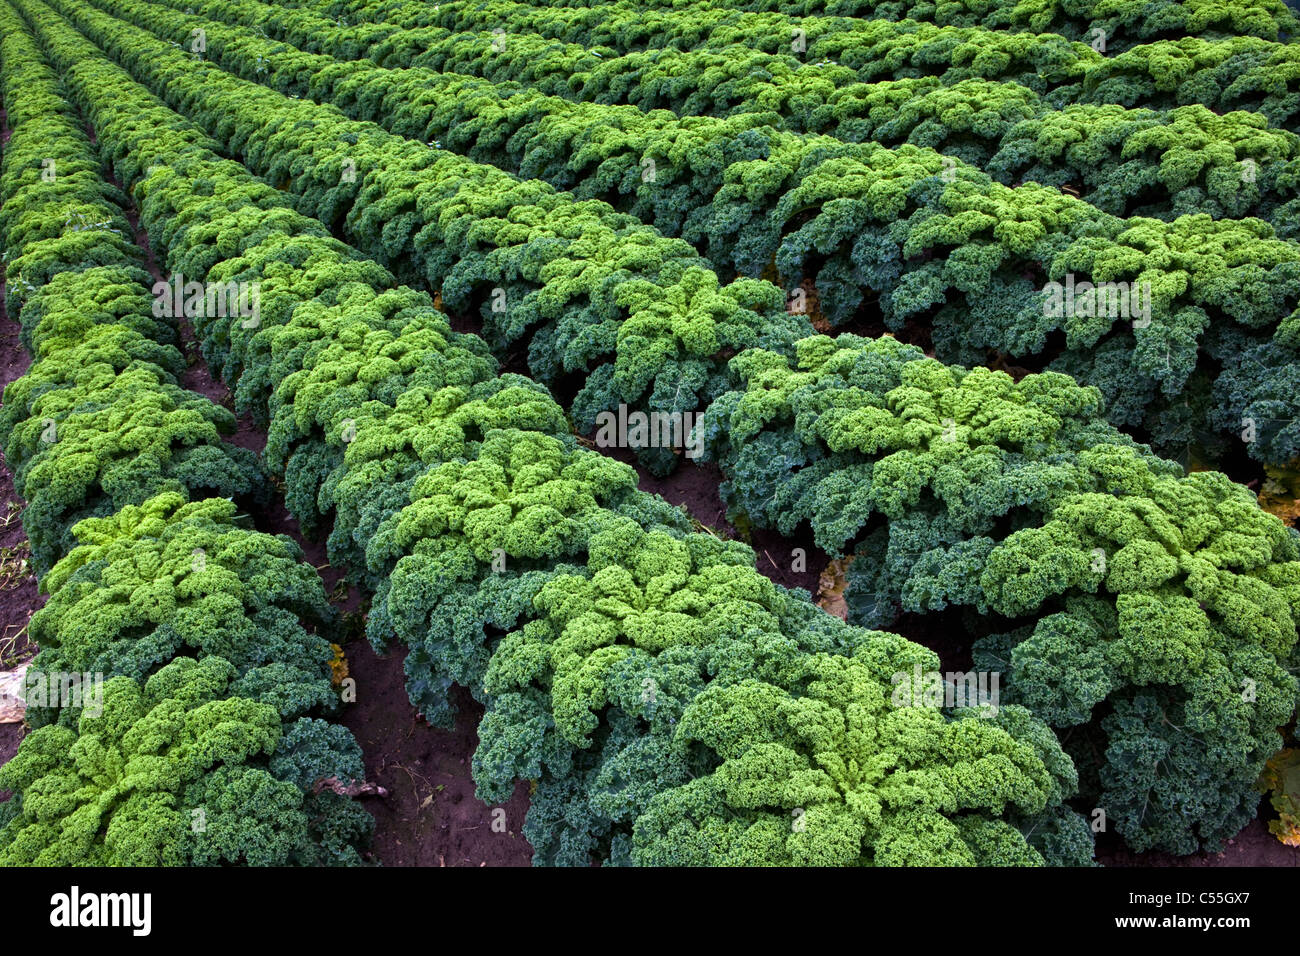 Den Niederlanden, Valkenburg, wachsende Grünkohl oder wird. Stockfoto